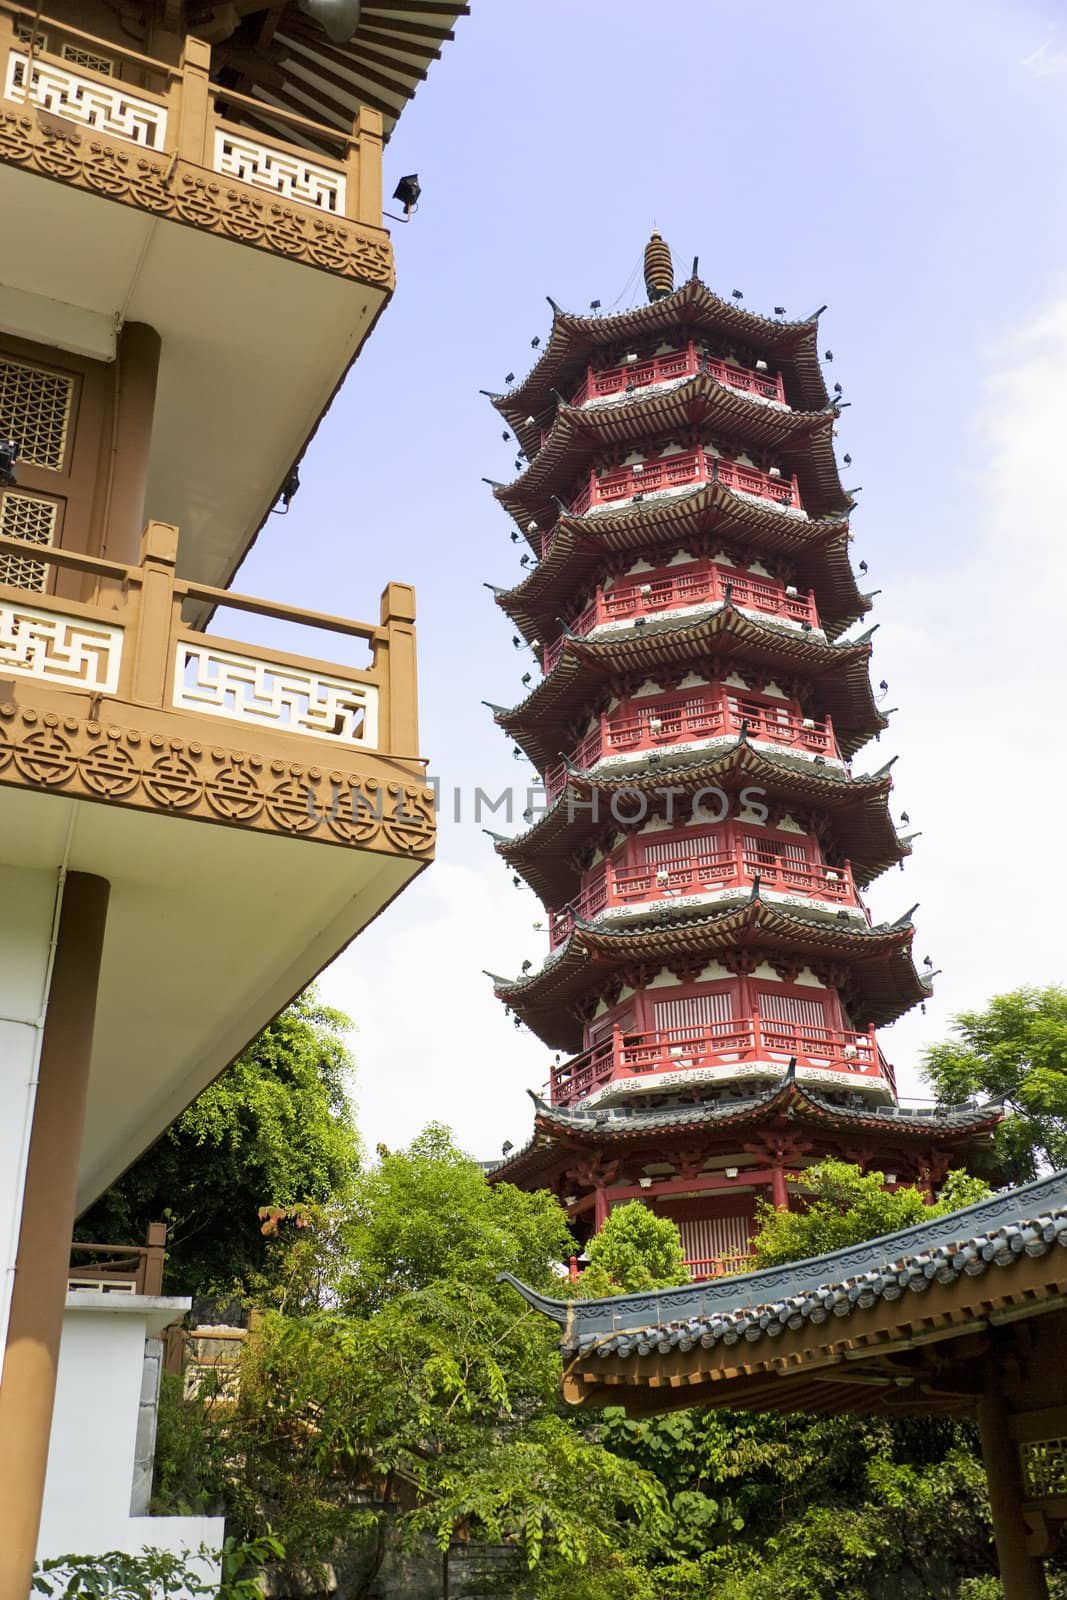 Image of the Mulong Lake pagoda and buildings at Guilin, China.